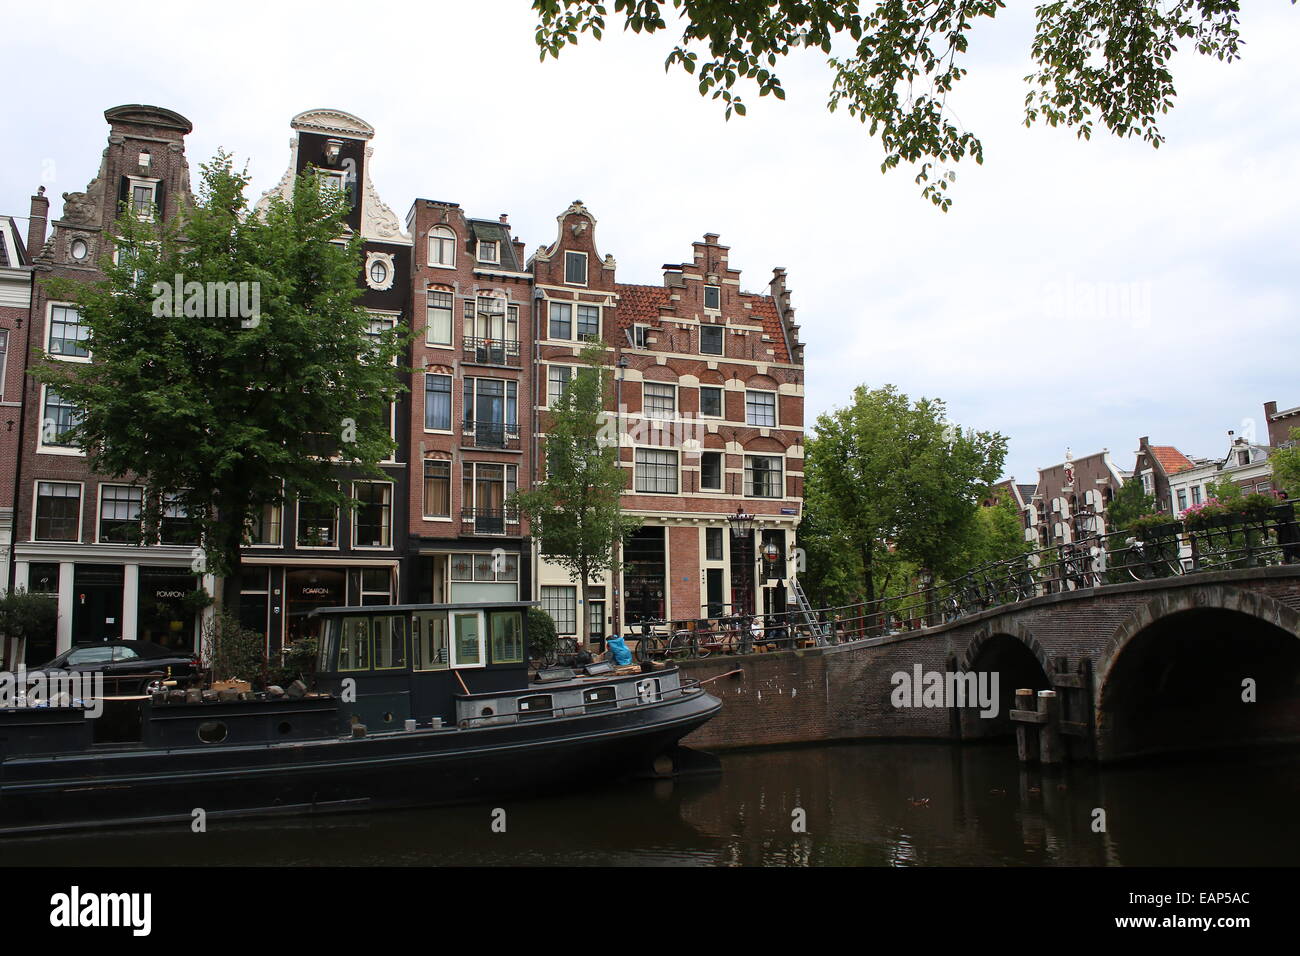 Brücke und alte Häuser Prinsengracht Bouwersgracht Kanal in Amsterdam, Niederlande trifft Stockfoto